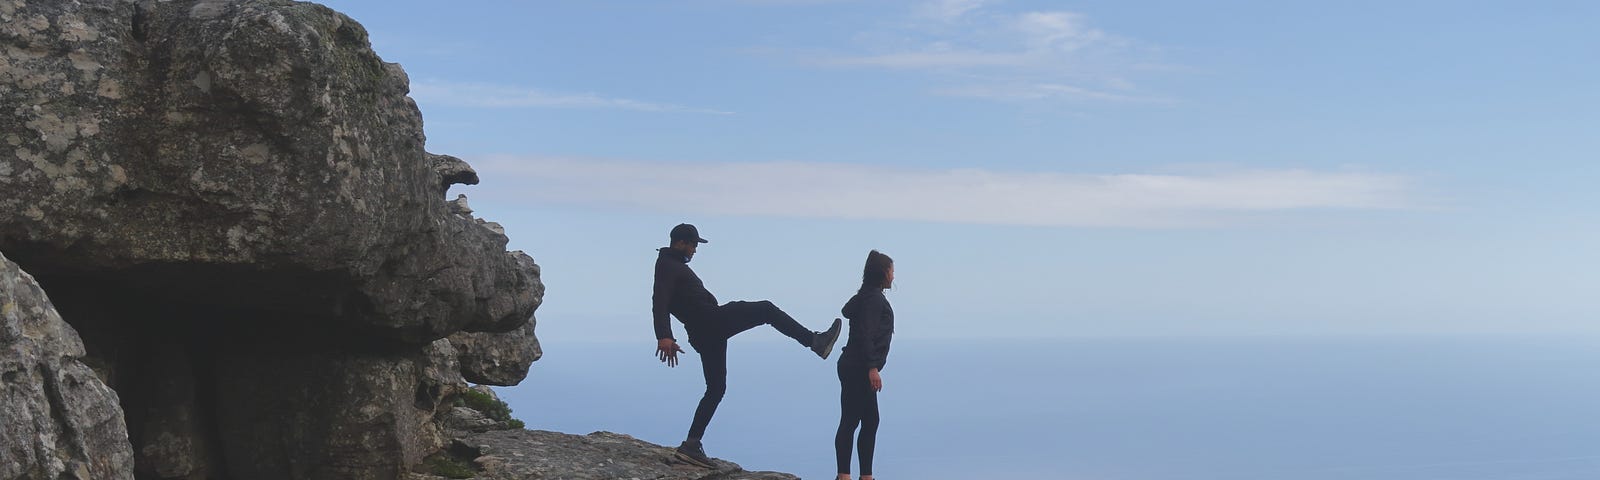 Man ready (pretending) to kick a woman off a cliff